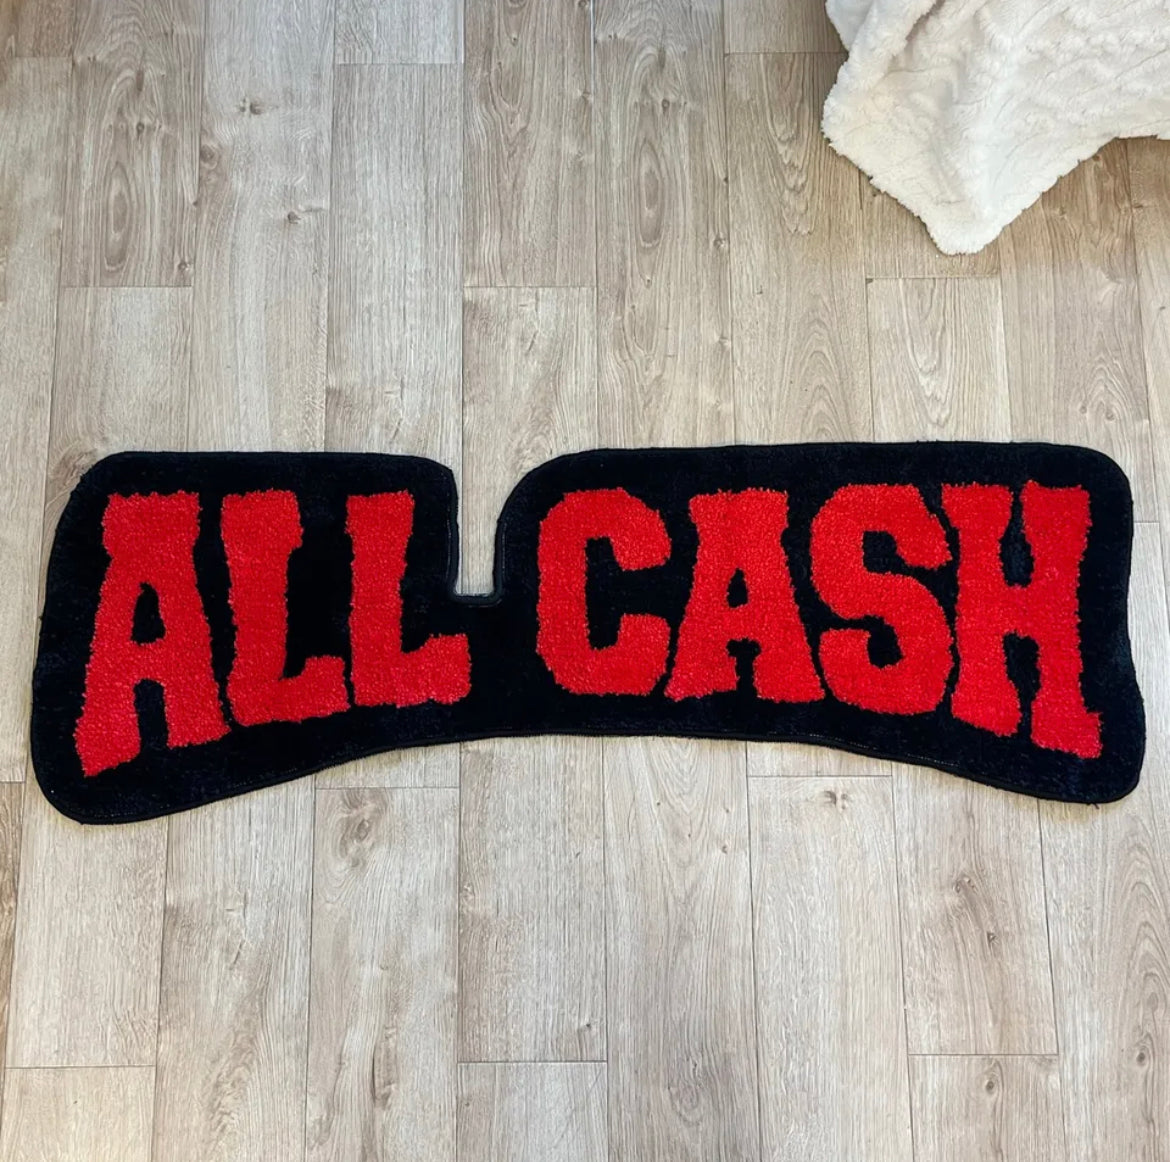 All cash rug